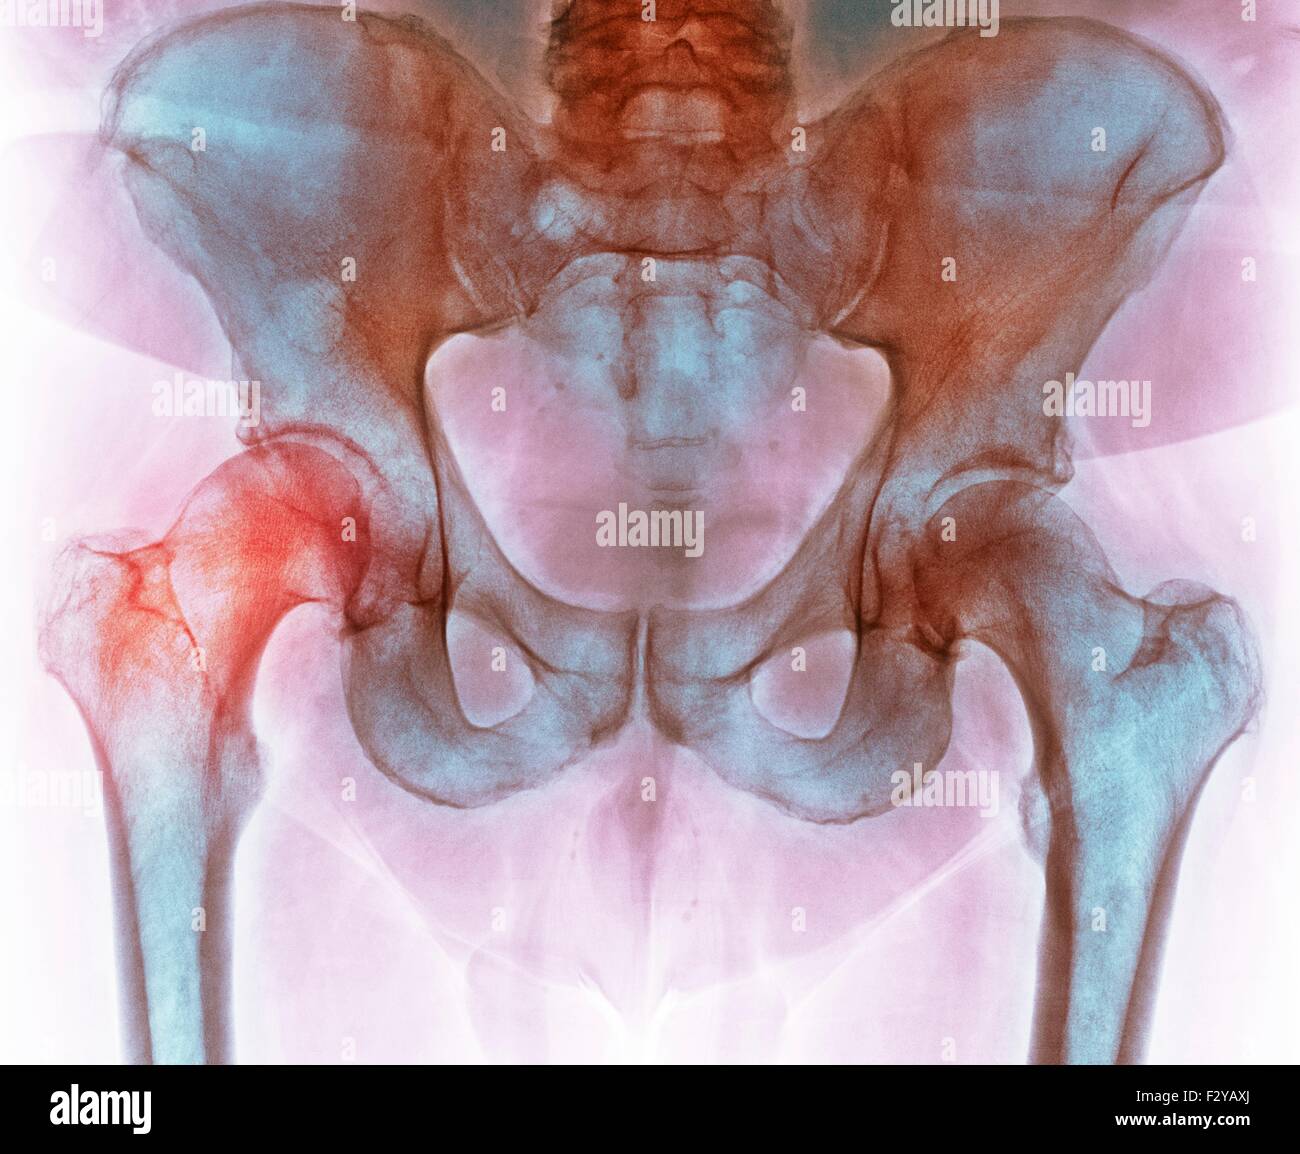 Anca prima di chirurgia sostitutiva dell'anca. Colorato X-ray di una sezione attraverso la regione pelvica di un 66-anno-vecchio paziente di sesso maschile con una articolazione dell'anca danneggiata (sinistra) prelevato prima del totale chirurgia sostitutiva dell'anca. Foto Stock